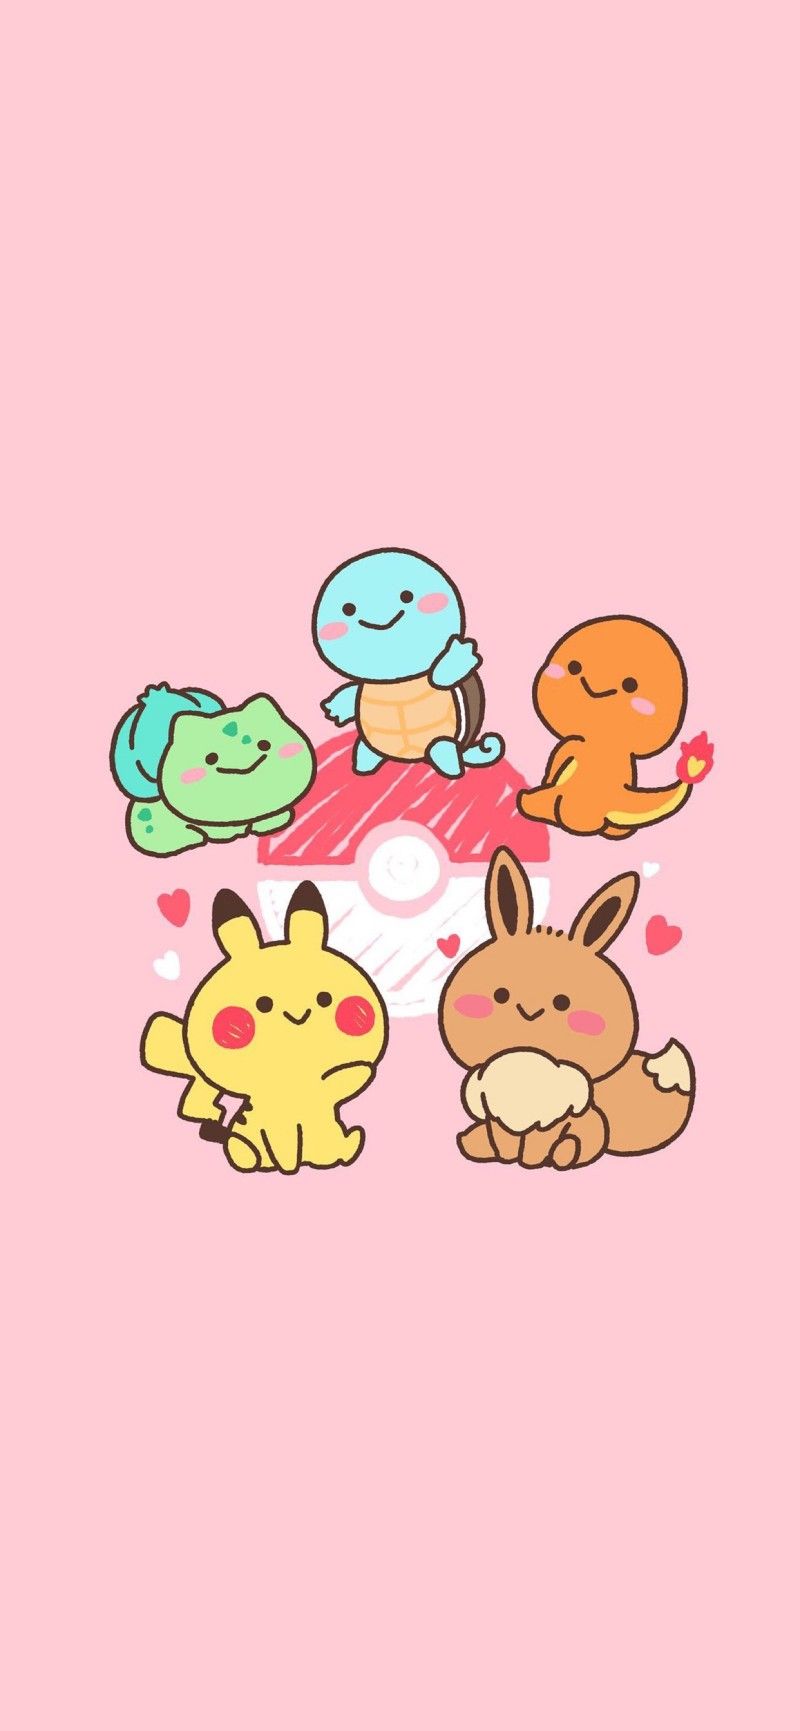 Save = Follow ♥︎. Cute pokemon wallpaper, Cool pokemon wallpaper, Cute pokemon